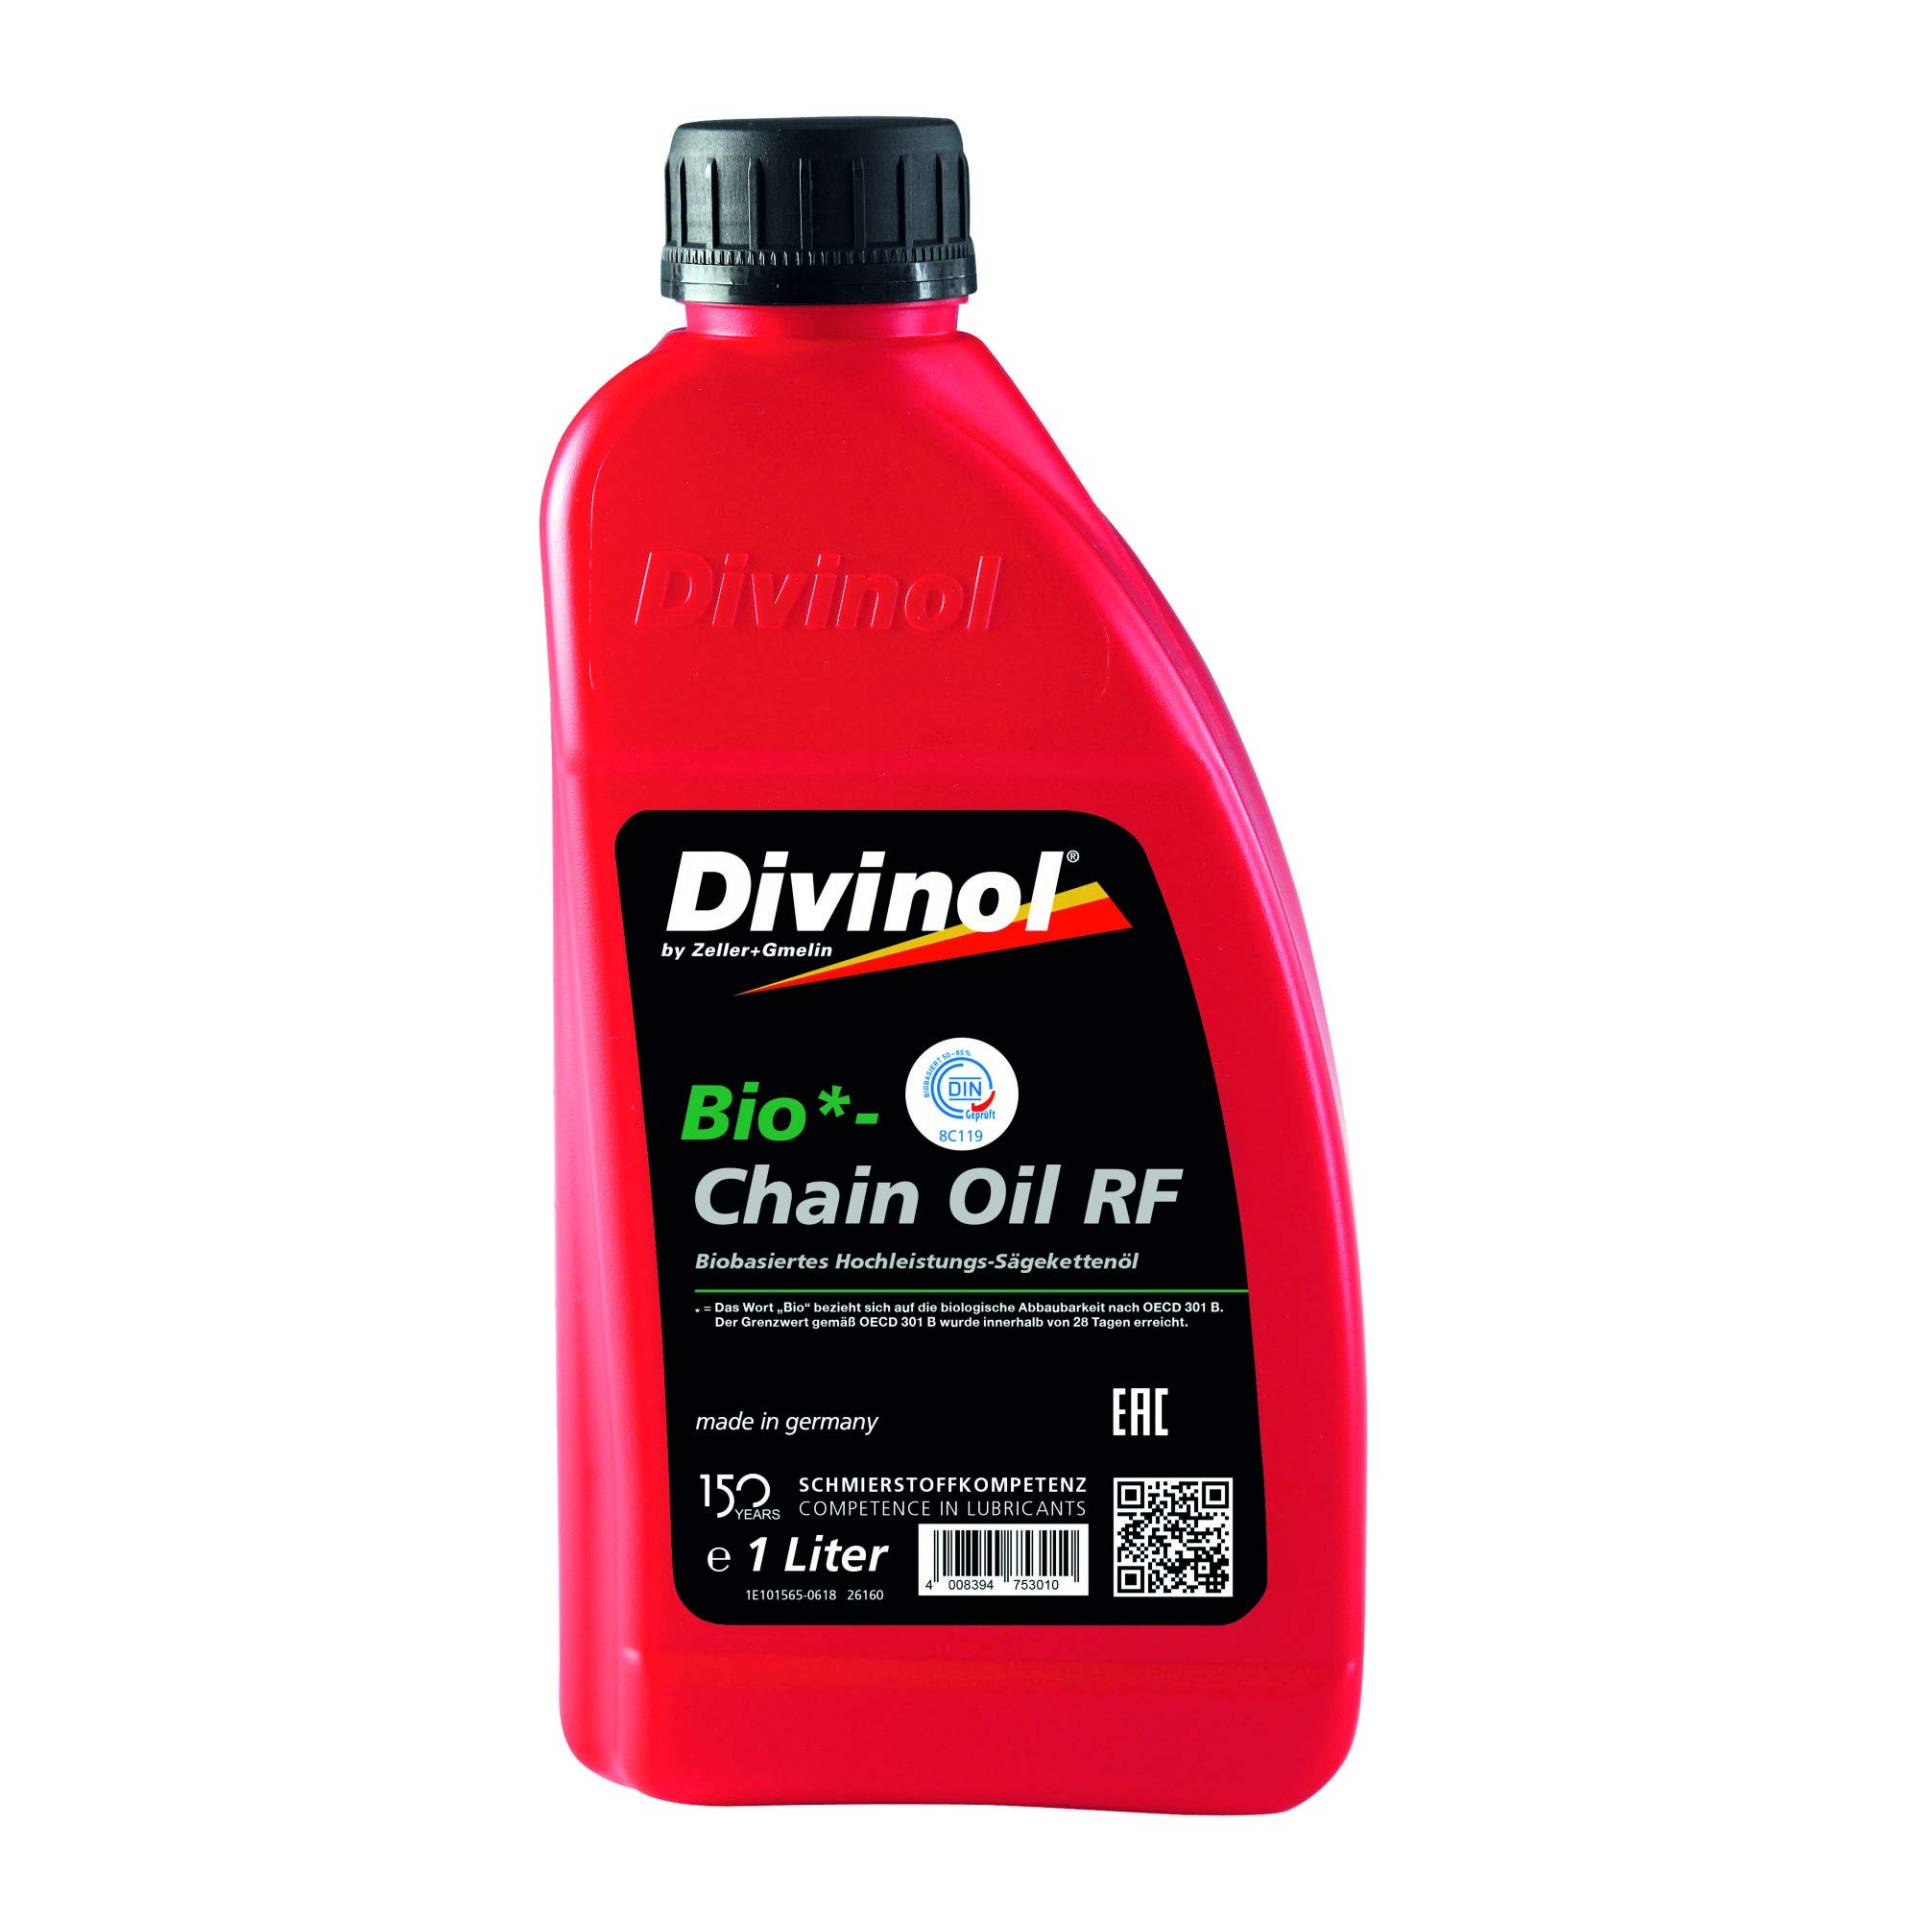 Bio-Chain Oil RF 'Divinol' / 1,0 l Kanister von bauCompany24